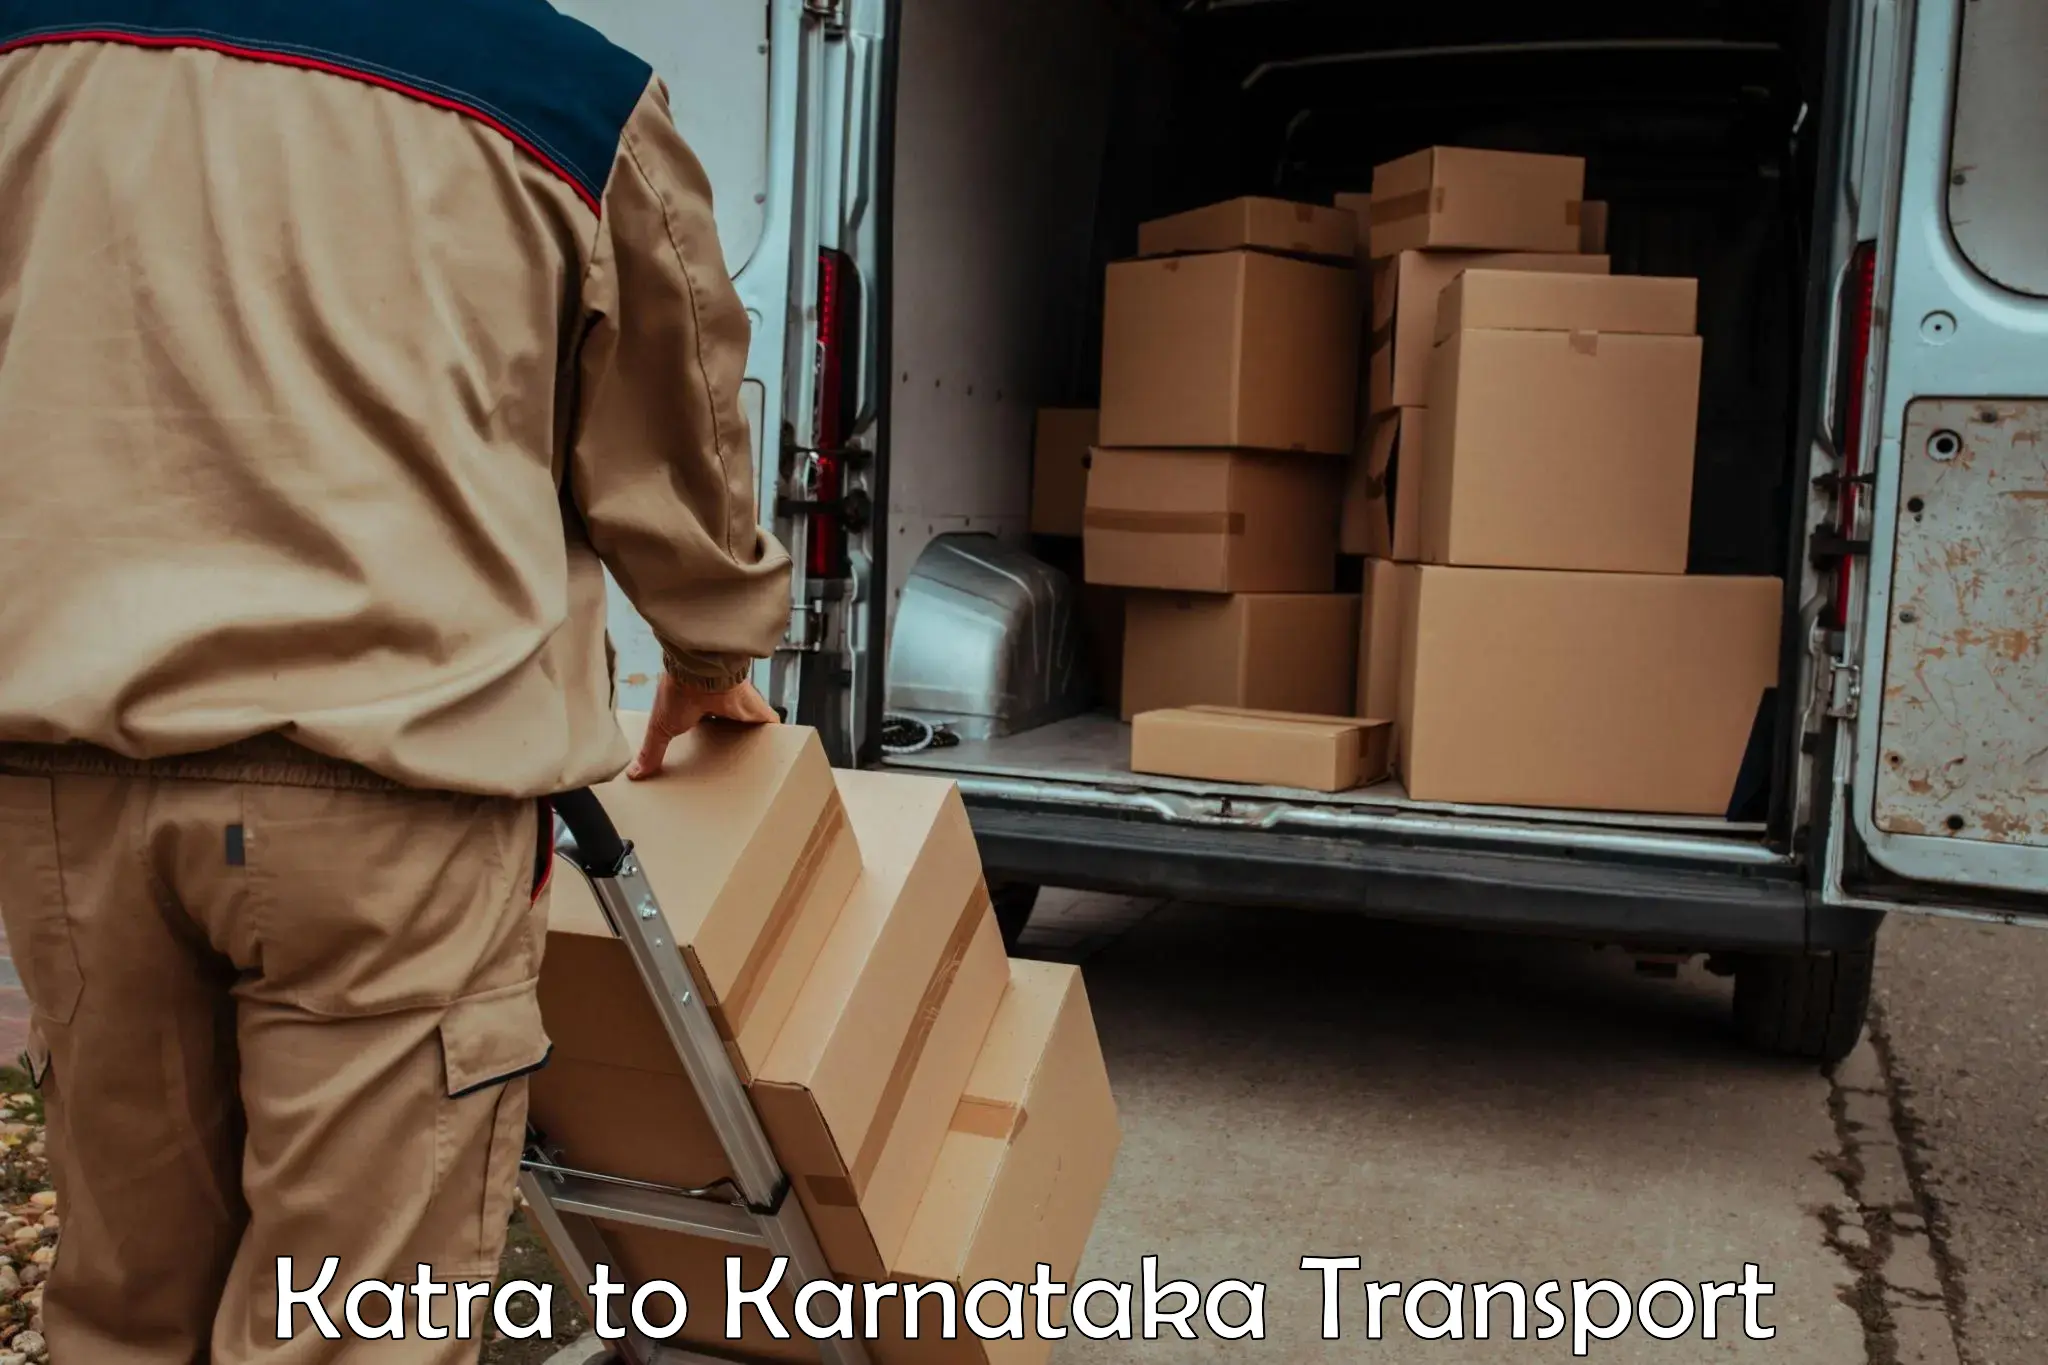 Cargo transport services Katra to Dabaspet